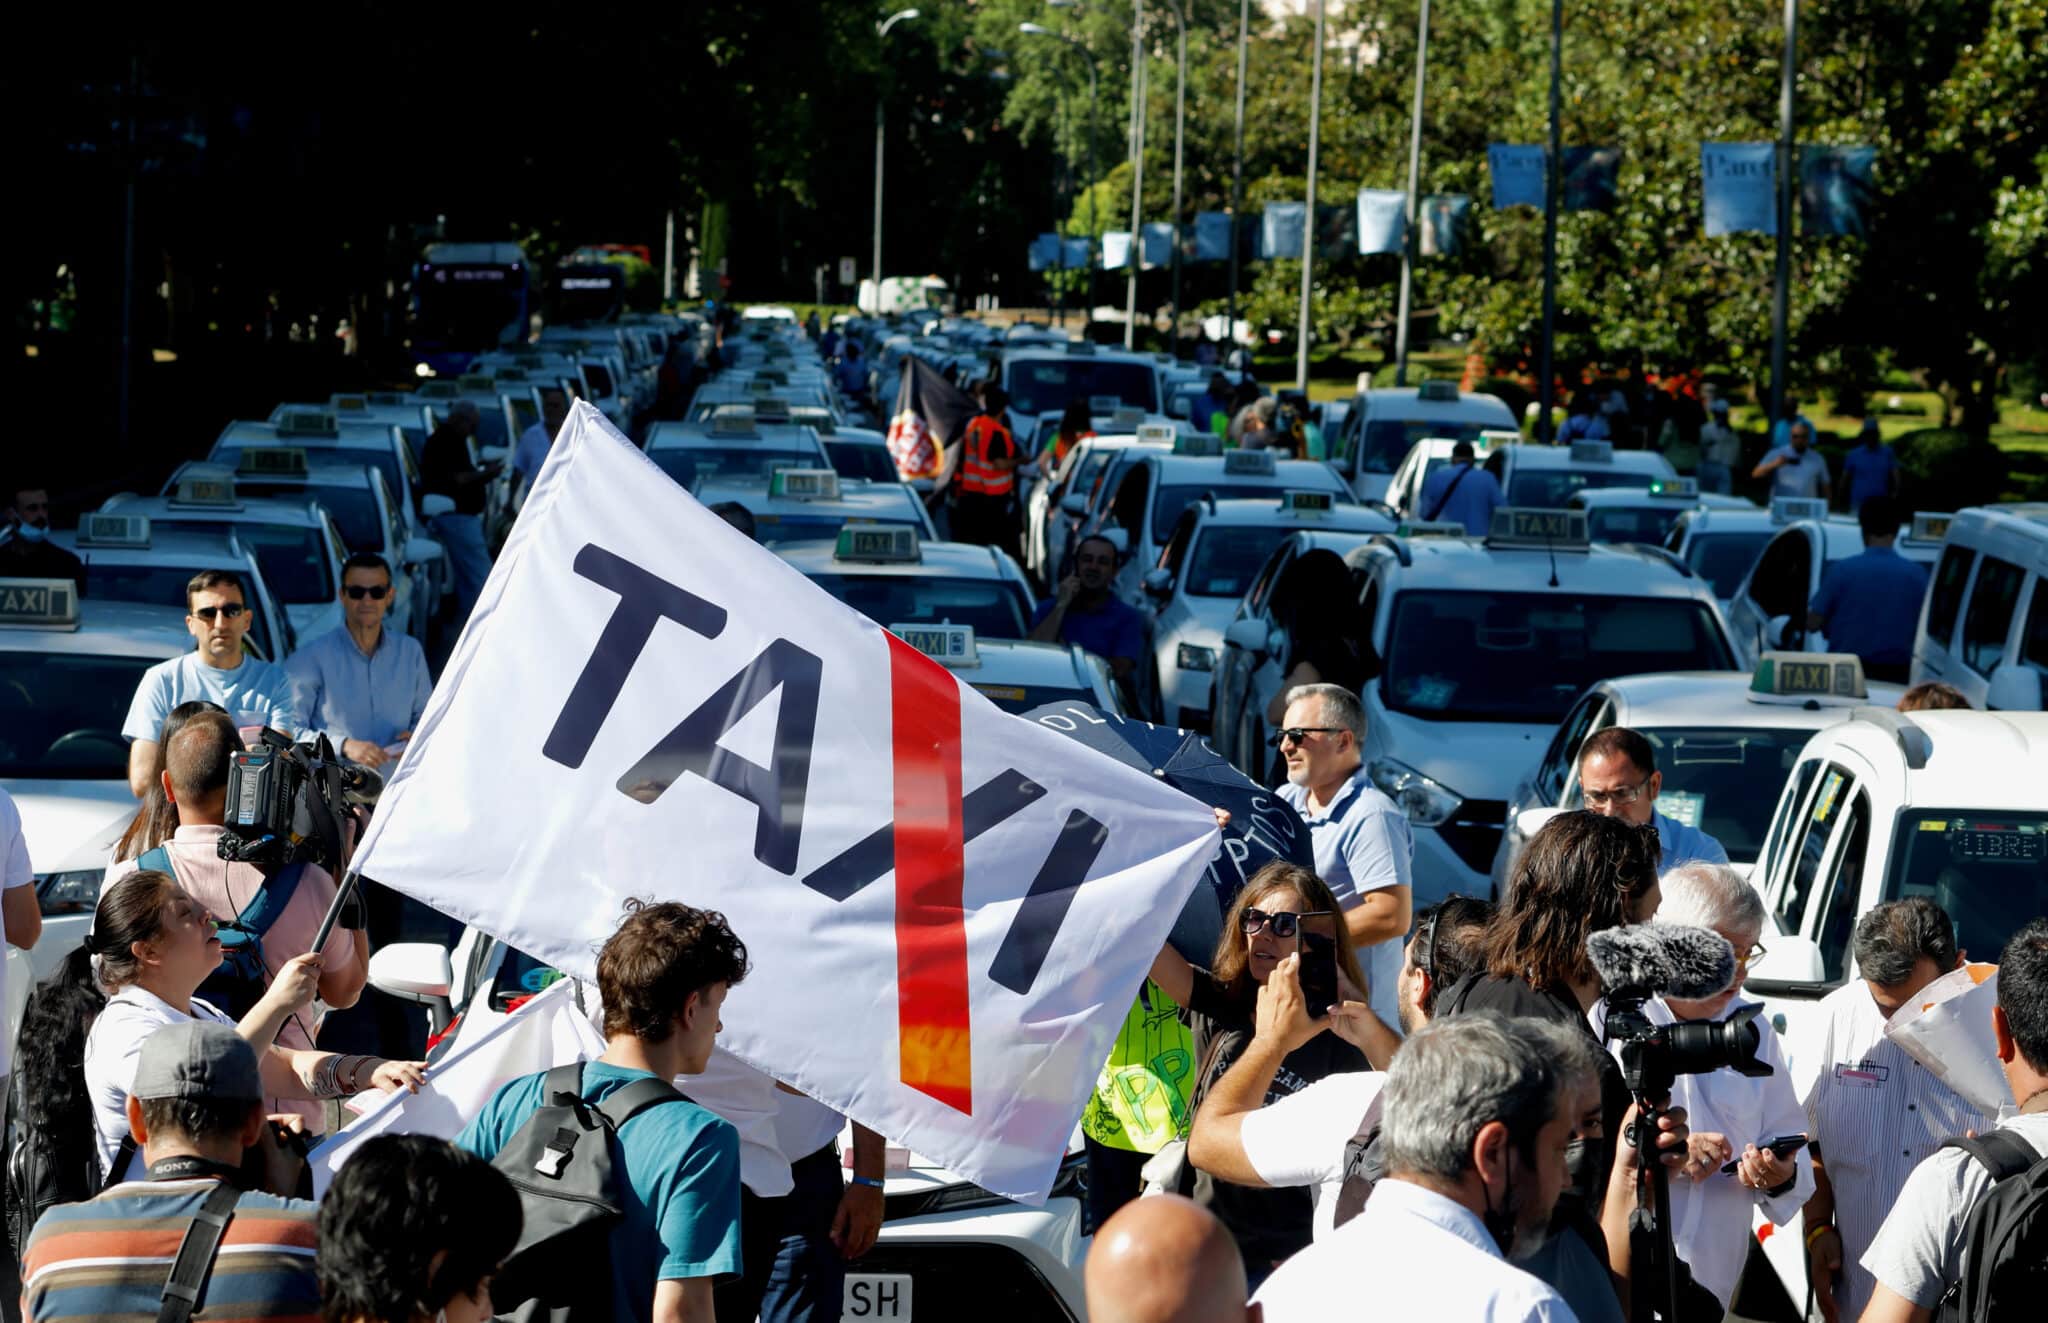 El Taxi se moviliza contra Ayuso por el 'traje a medida' que ultima para los VTC en Madrid